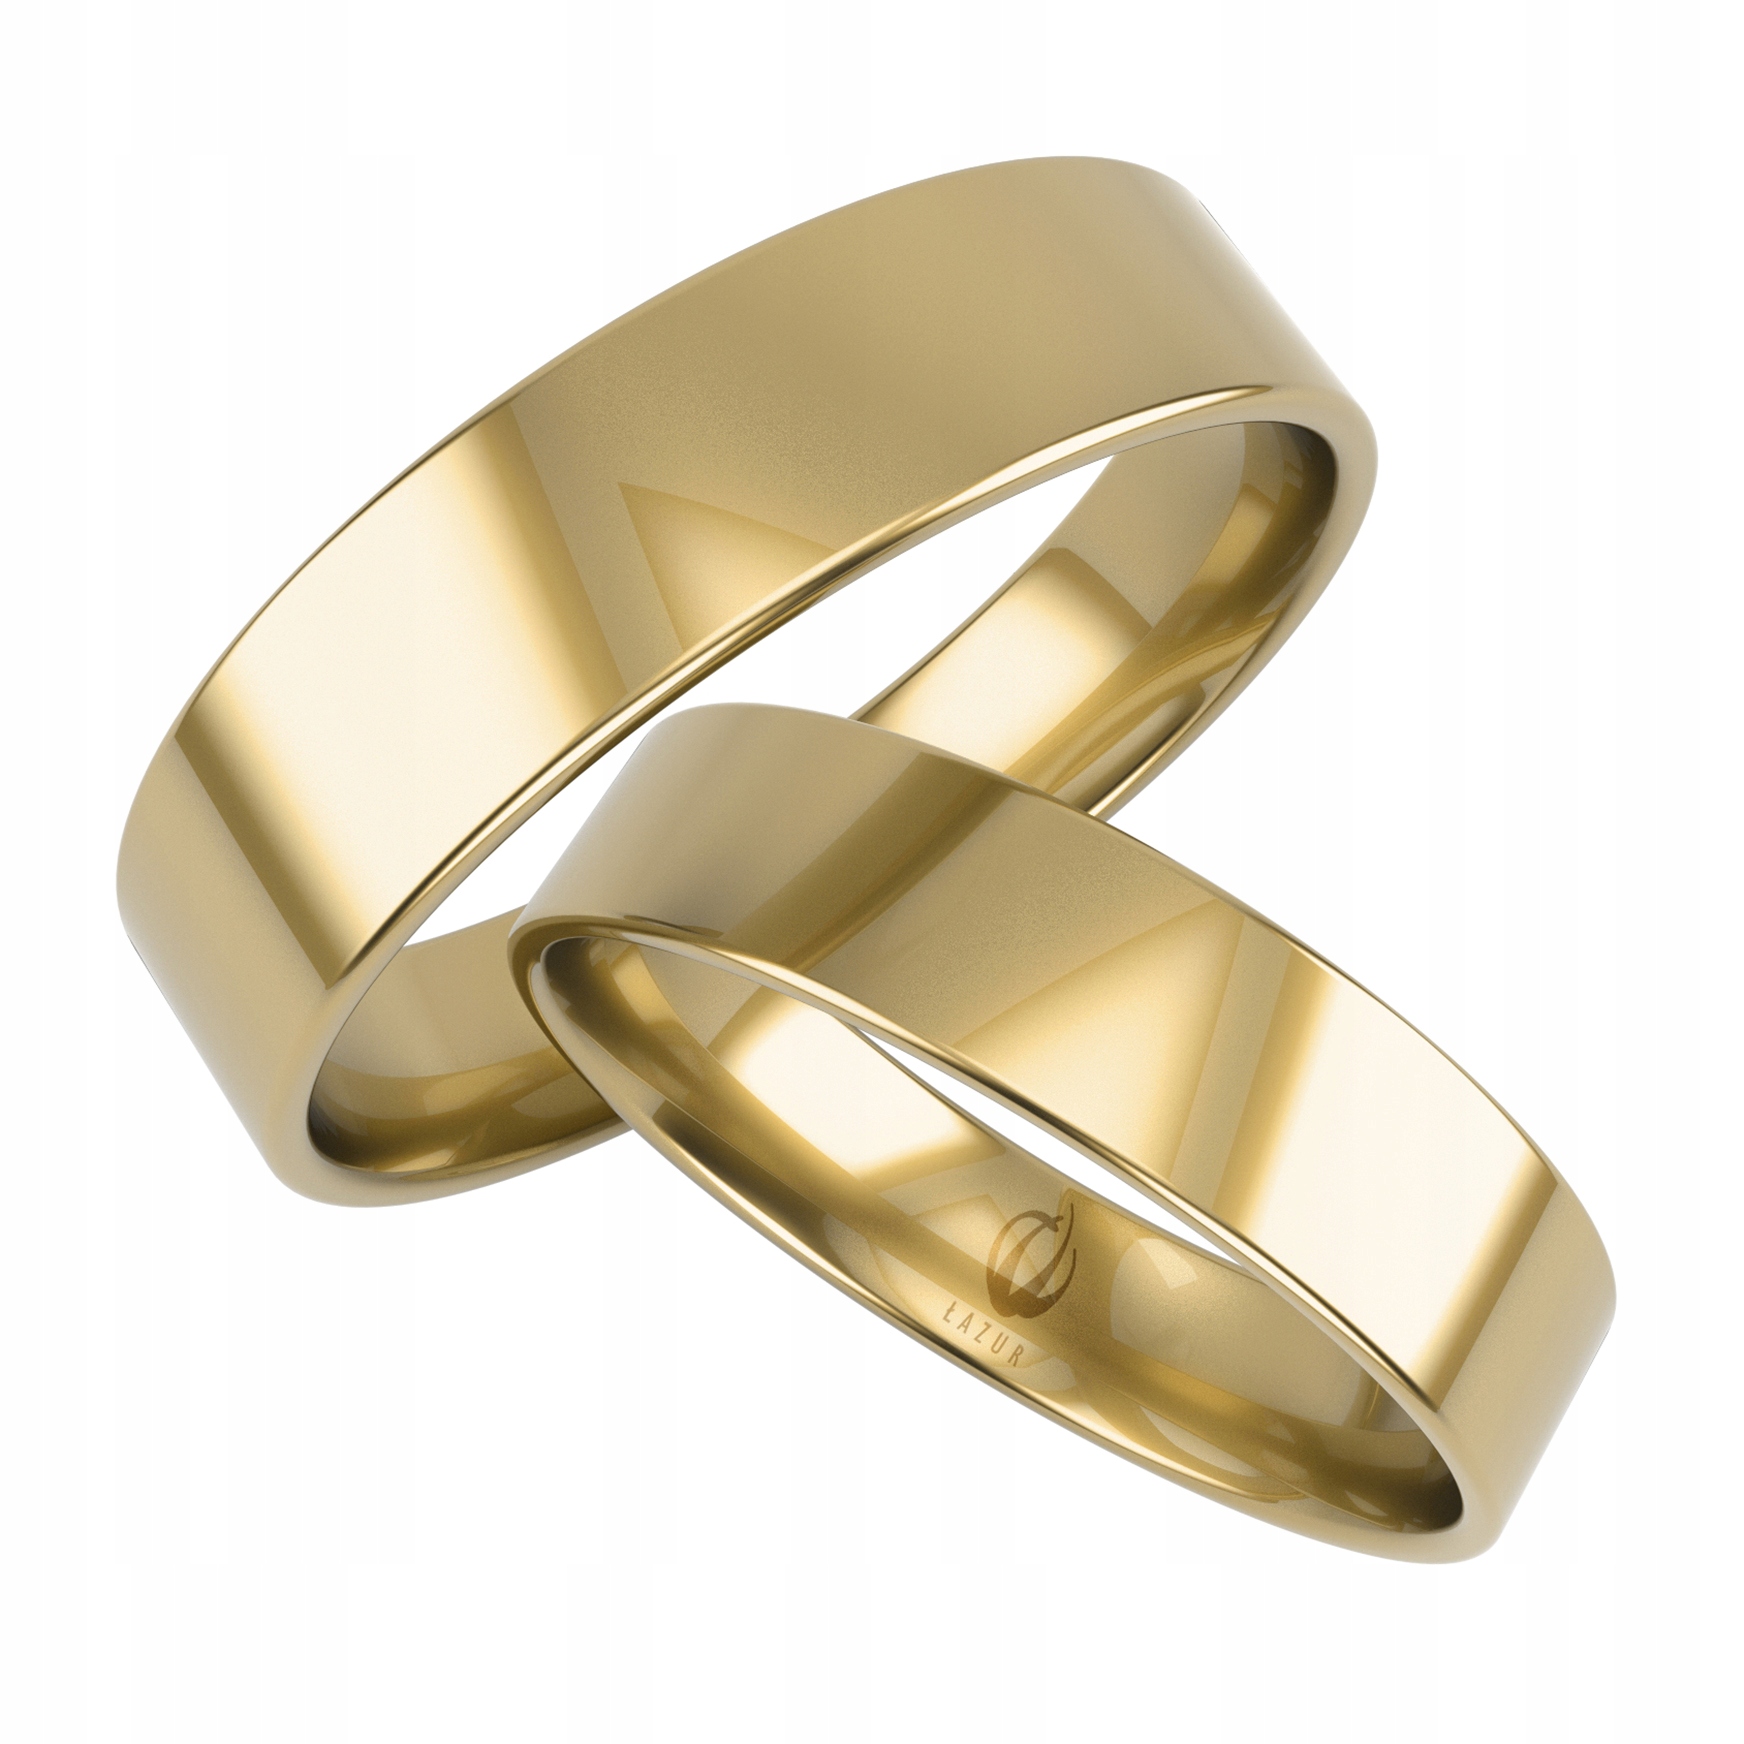 Купить недорого обручальные кольца золото. Обручальные кольца европейская классика 585. Обручальные кольца 585. Плоские обручальные кольца. Плоские обручальные кольца из желтого золота.